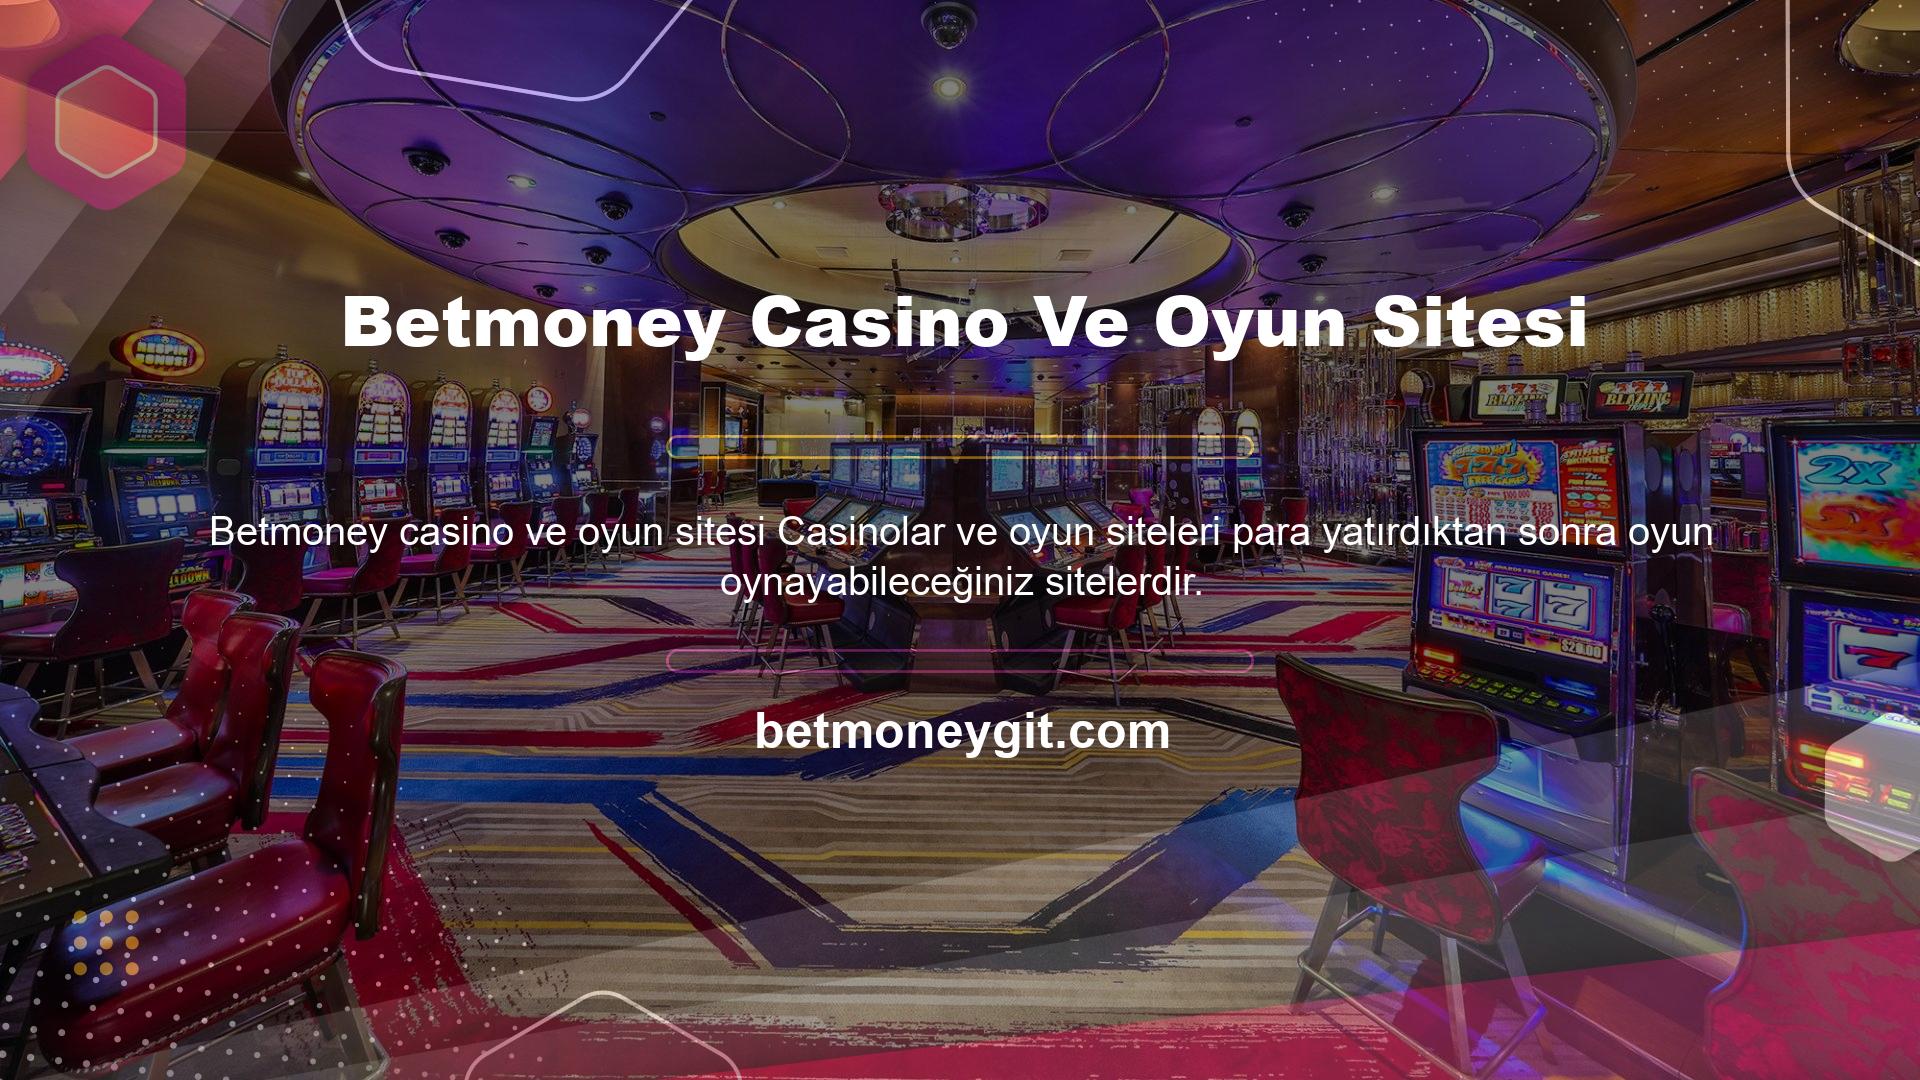 Betmoney Casino Ve Oyun Sitesi